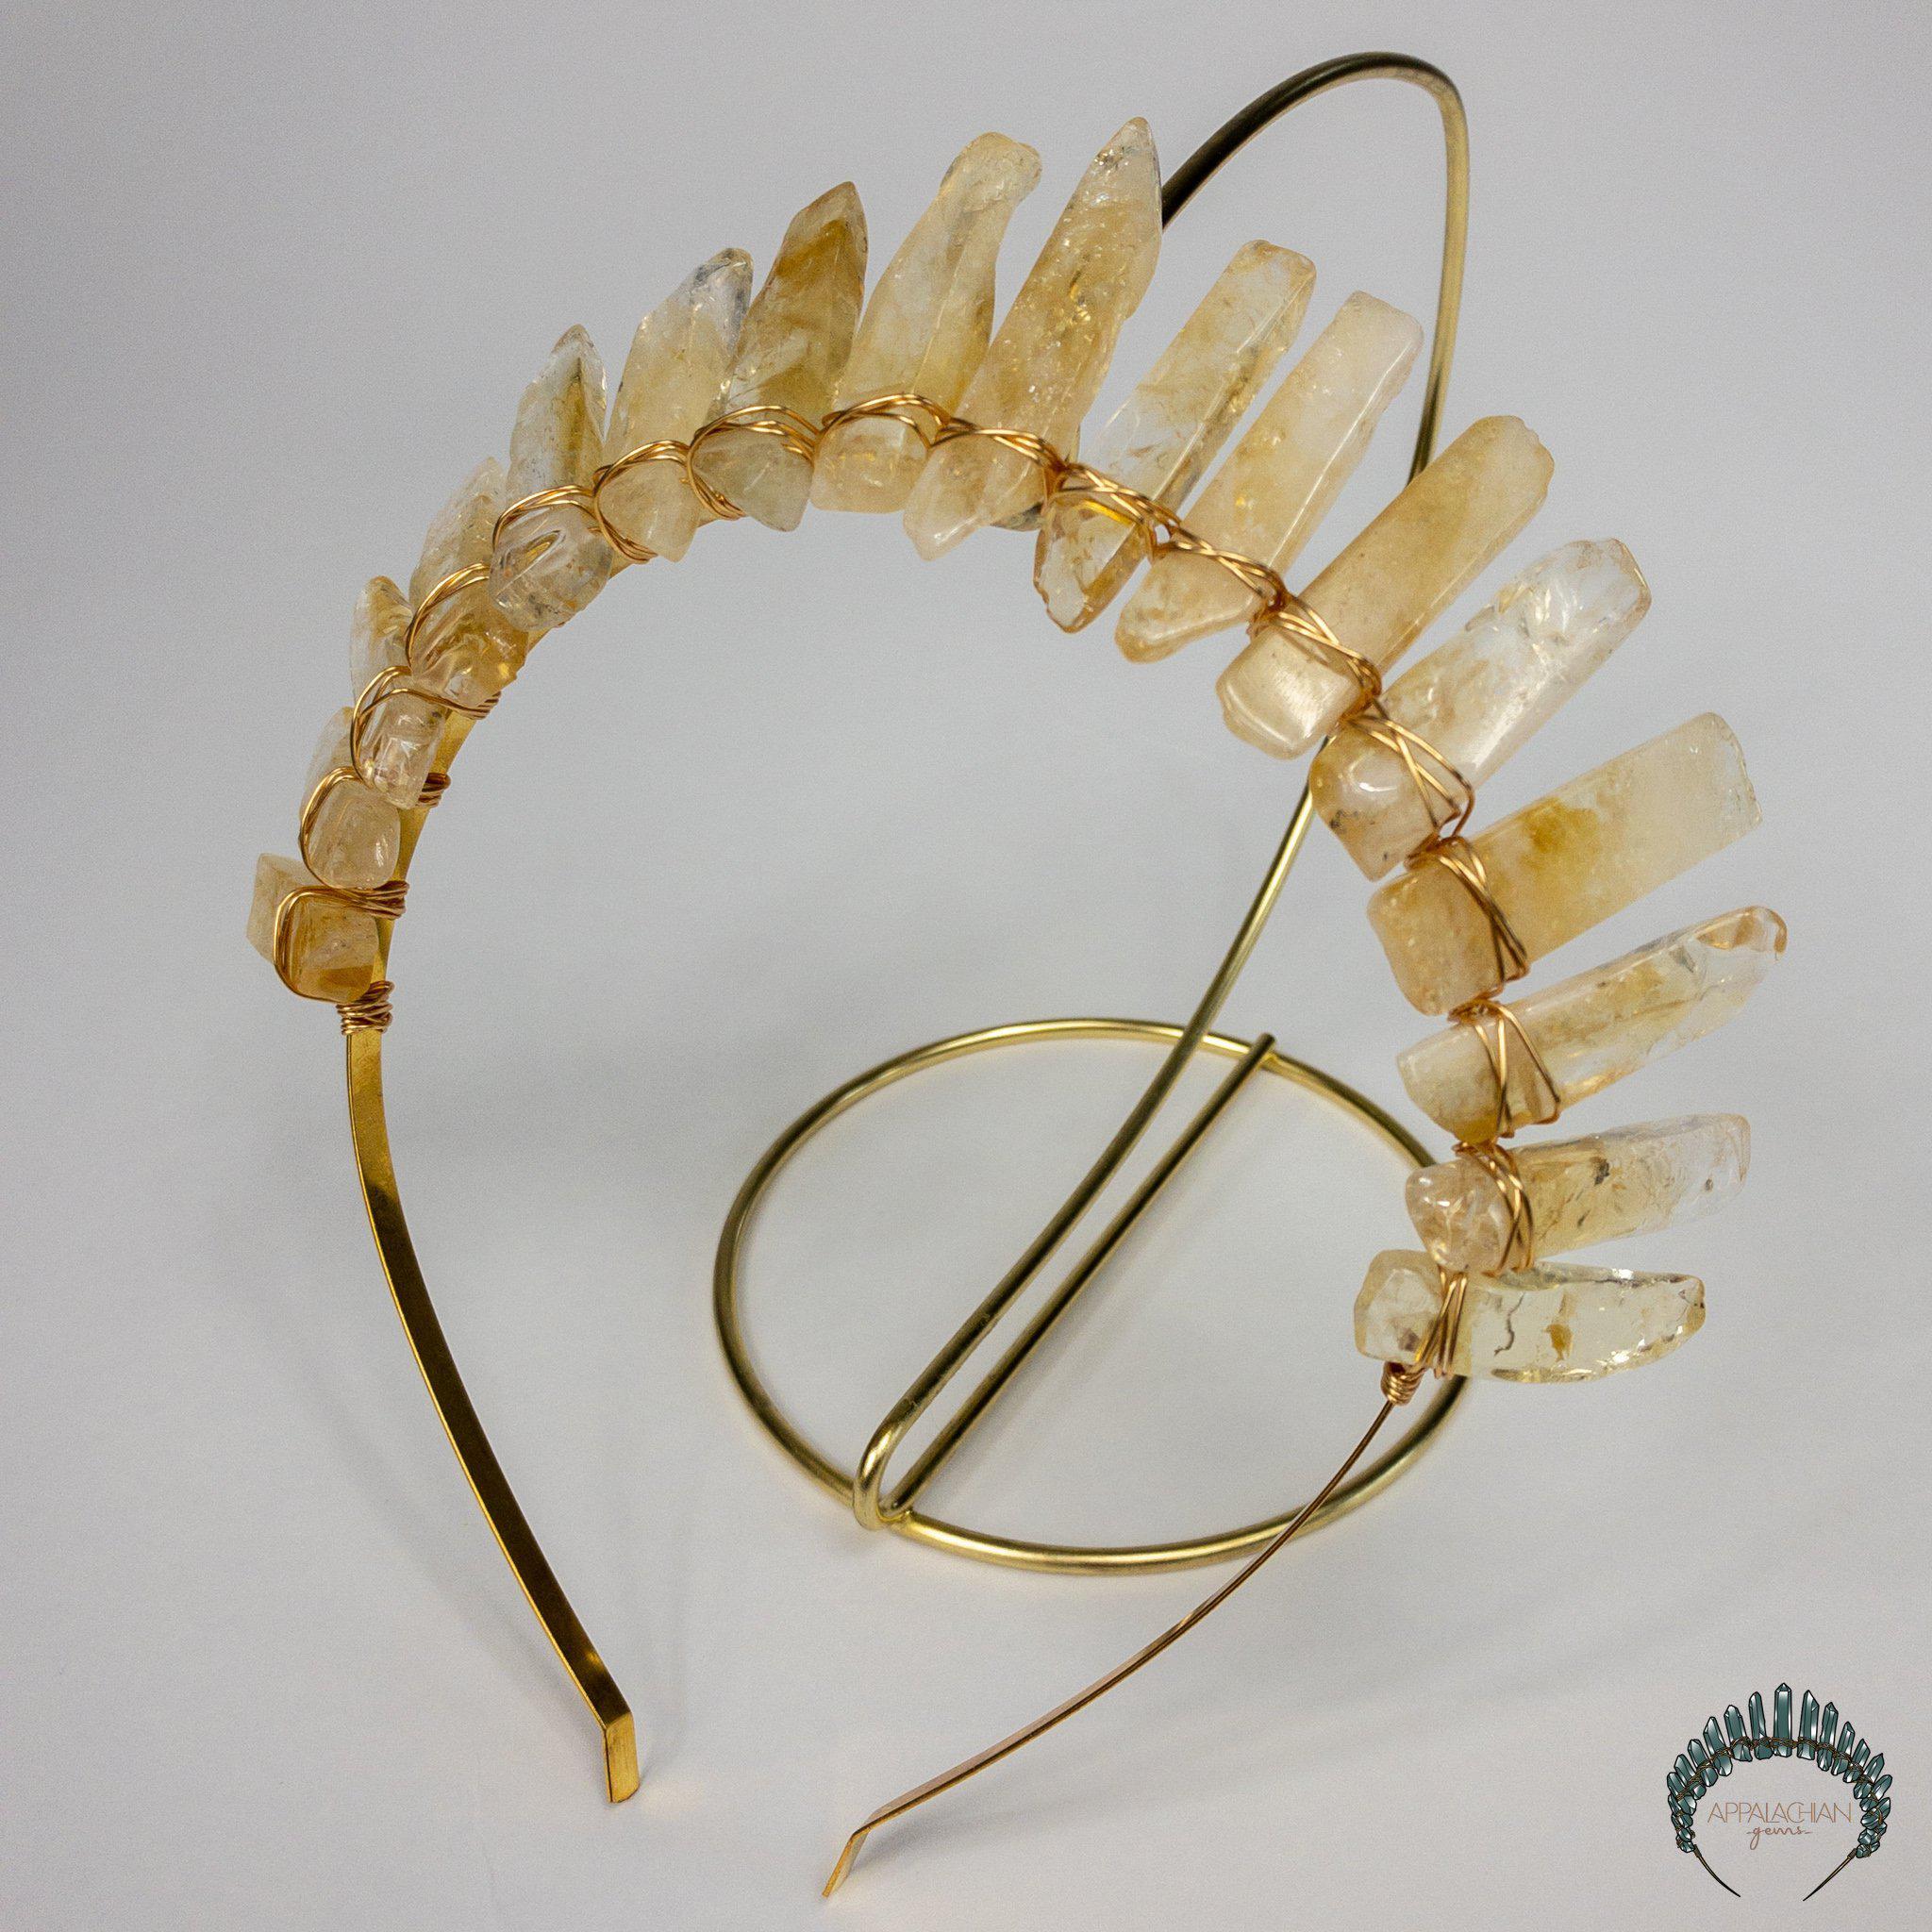 Citrine Crystal Crown - Appalachian Gems